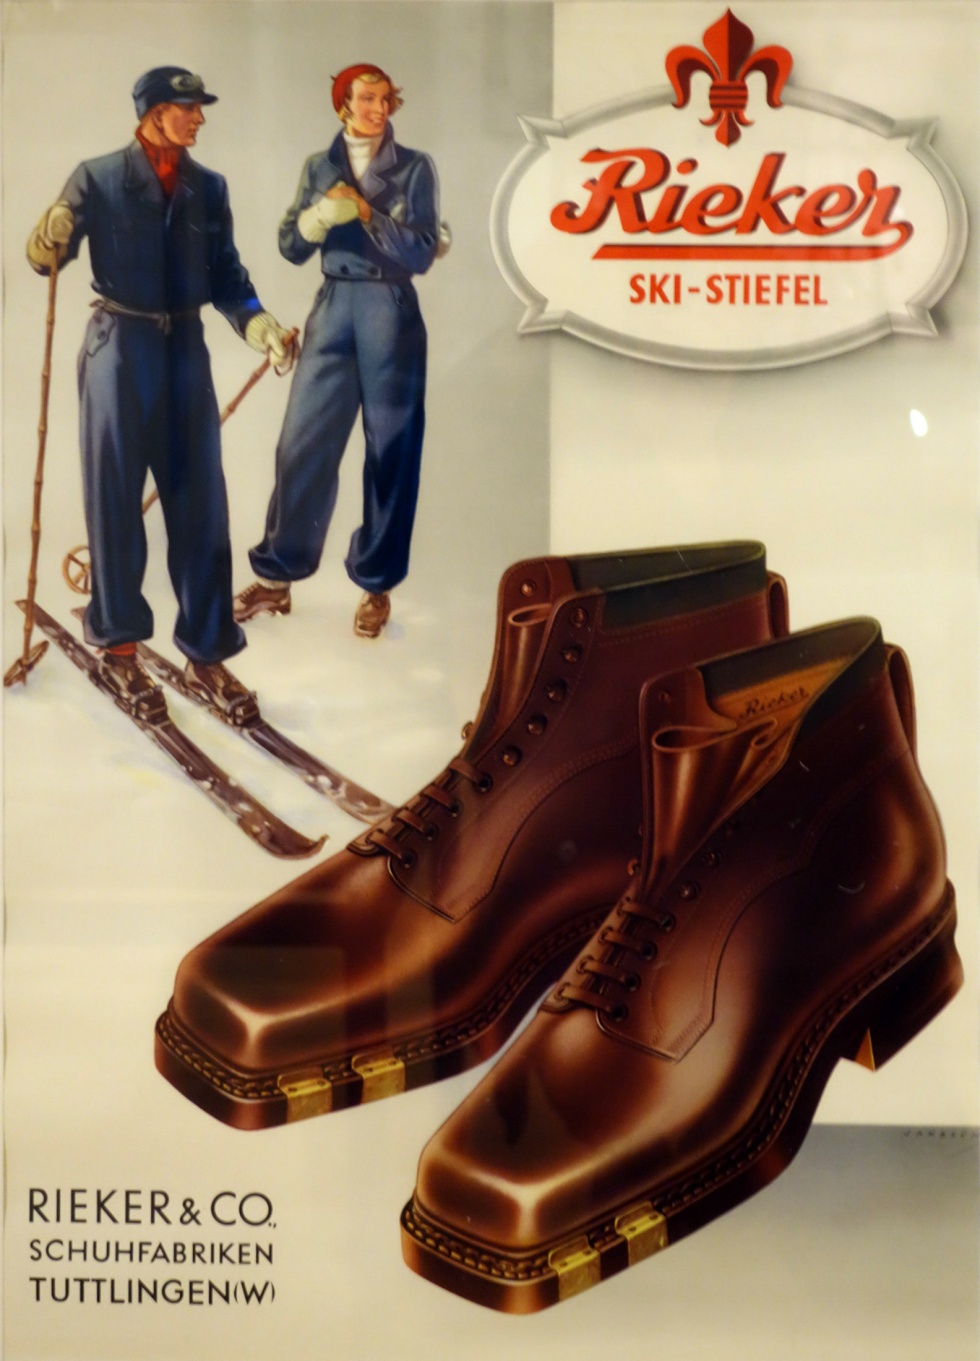 Werbeplakat &quot;Rieker Ski-Stiefel&quot; (Heimatmuseum Fruchtkasten CC BY-NC-SA)